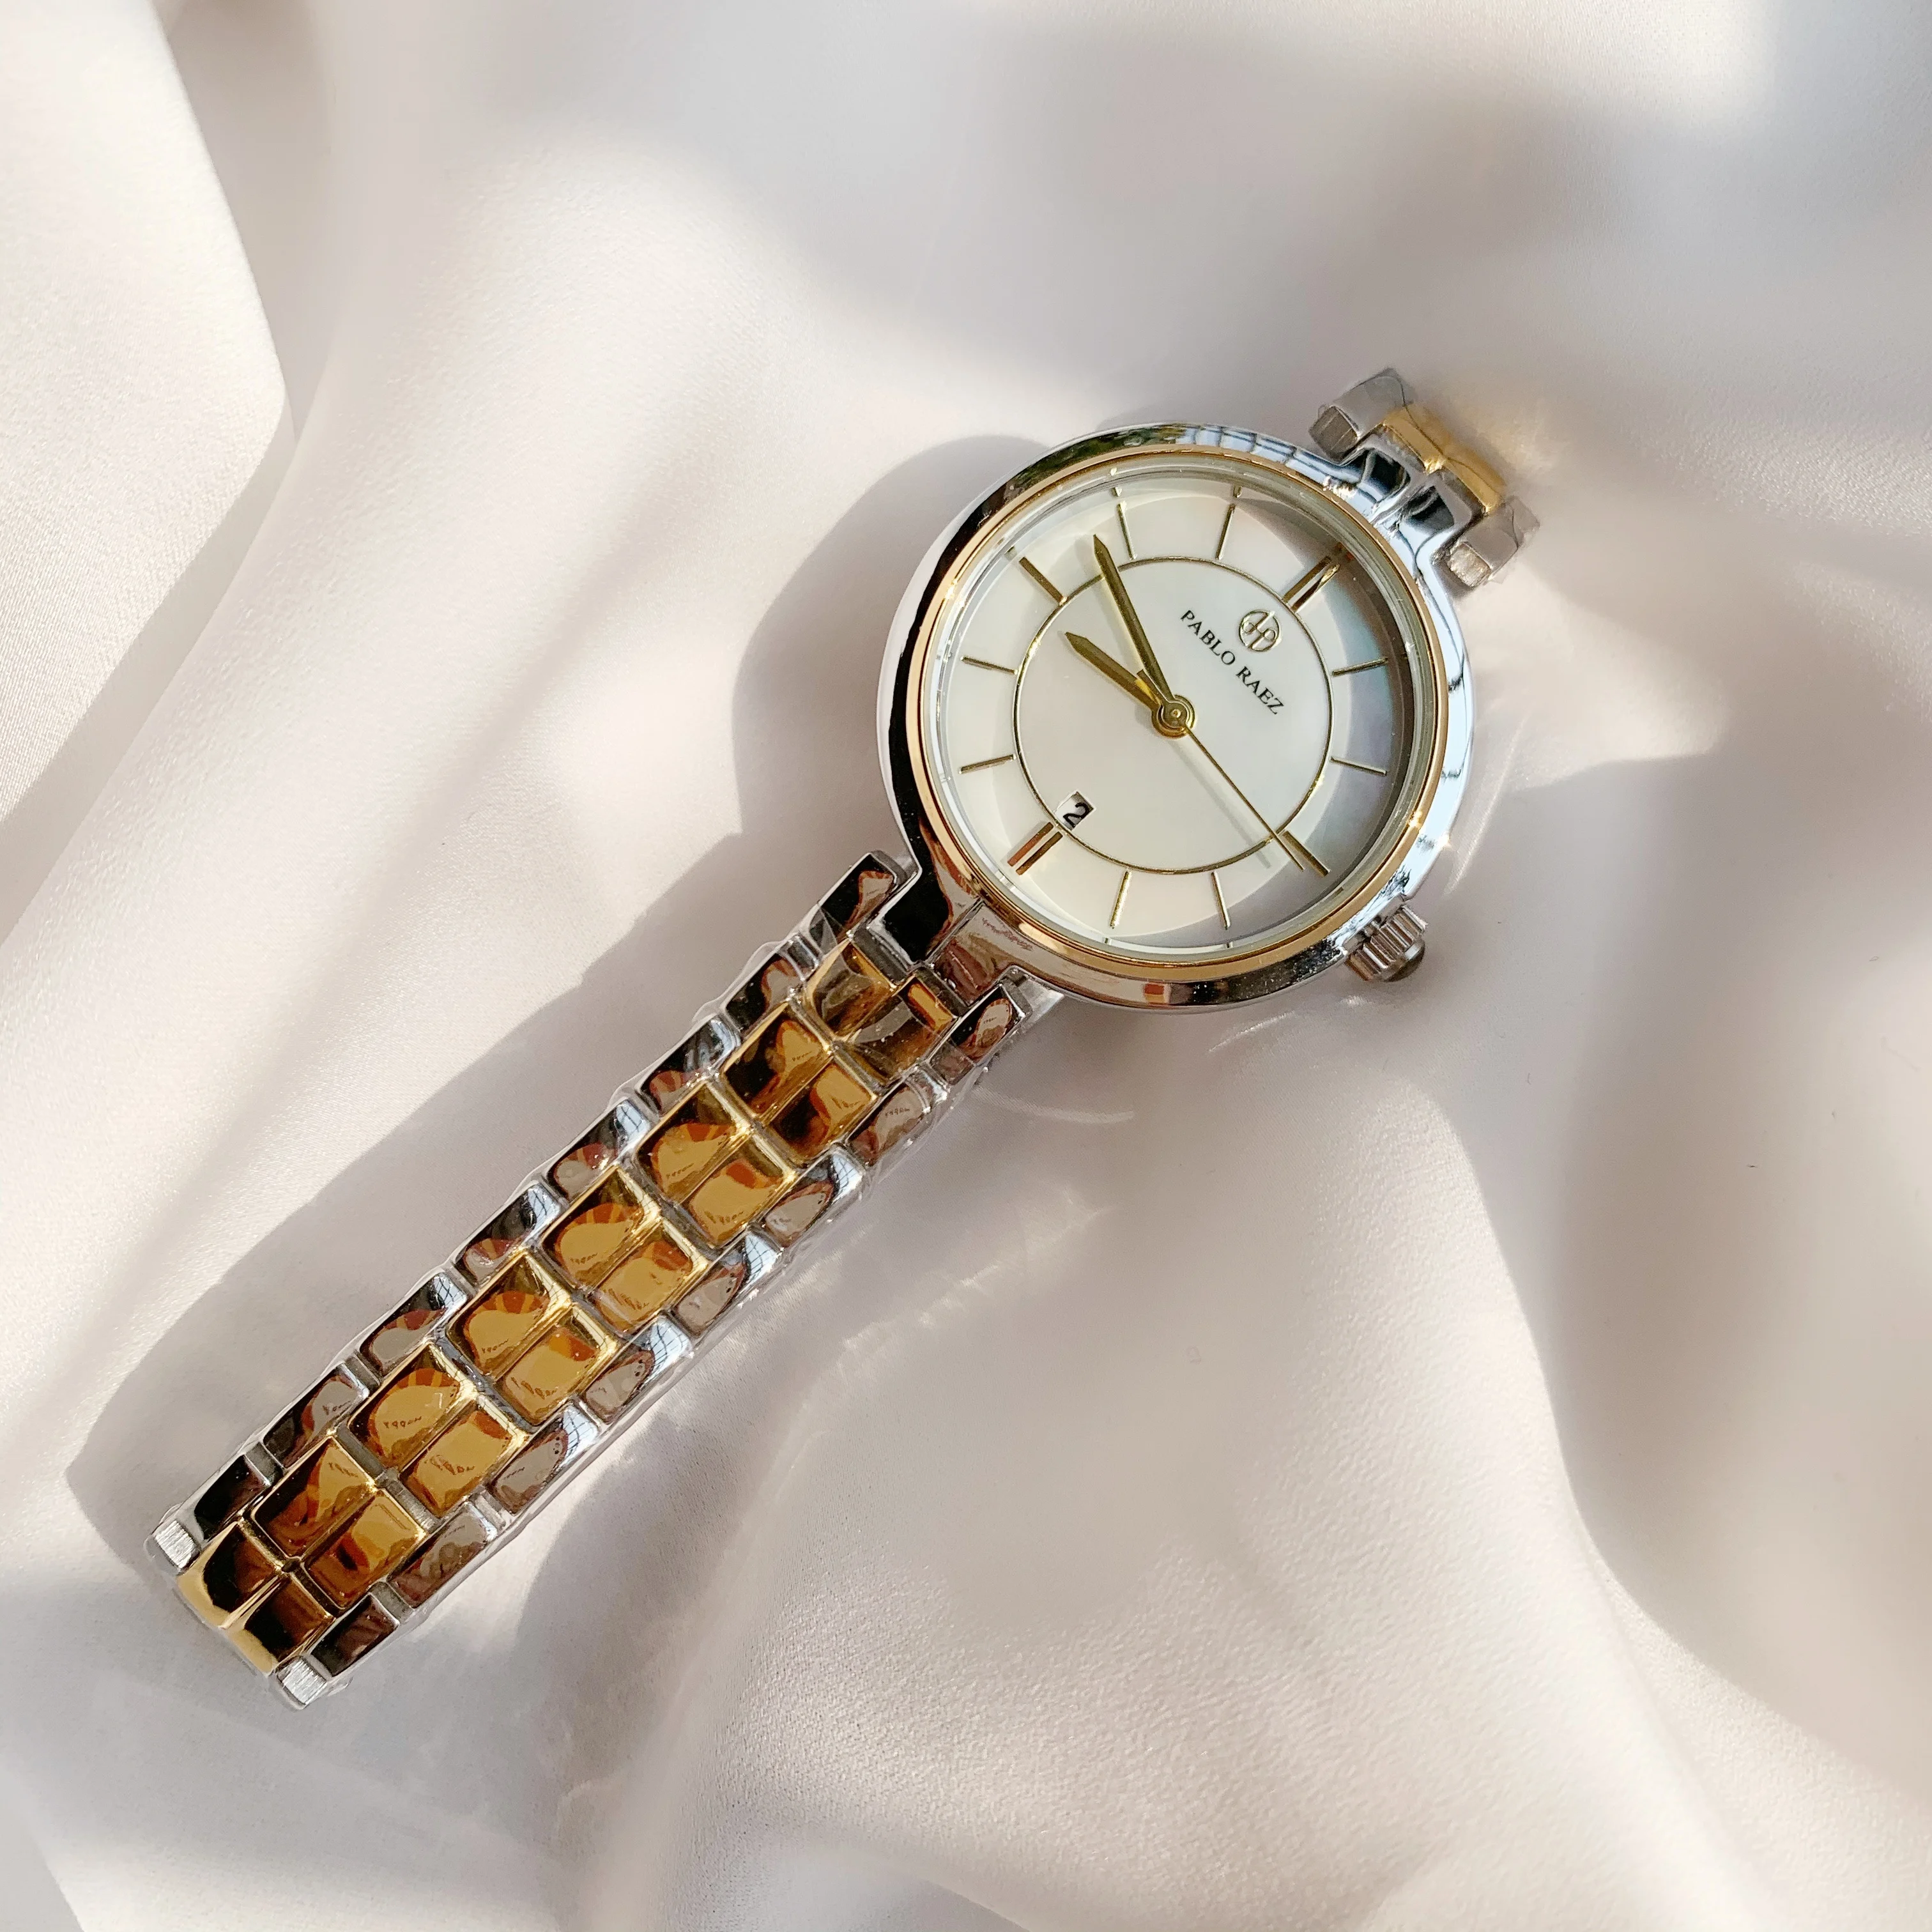 PABLO RAEZ новые женские часы от известного роскошного бренда нержавеющая сталь